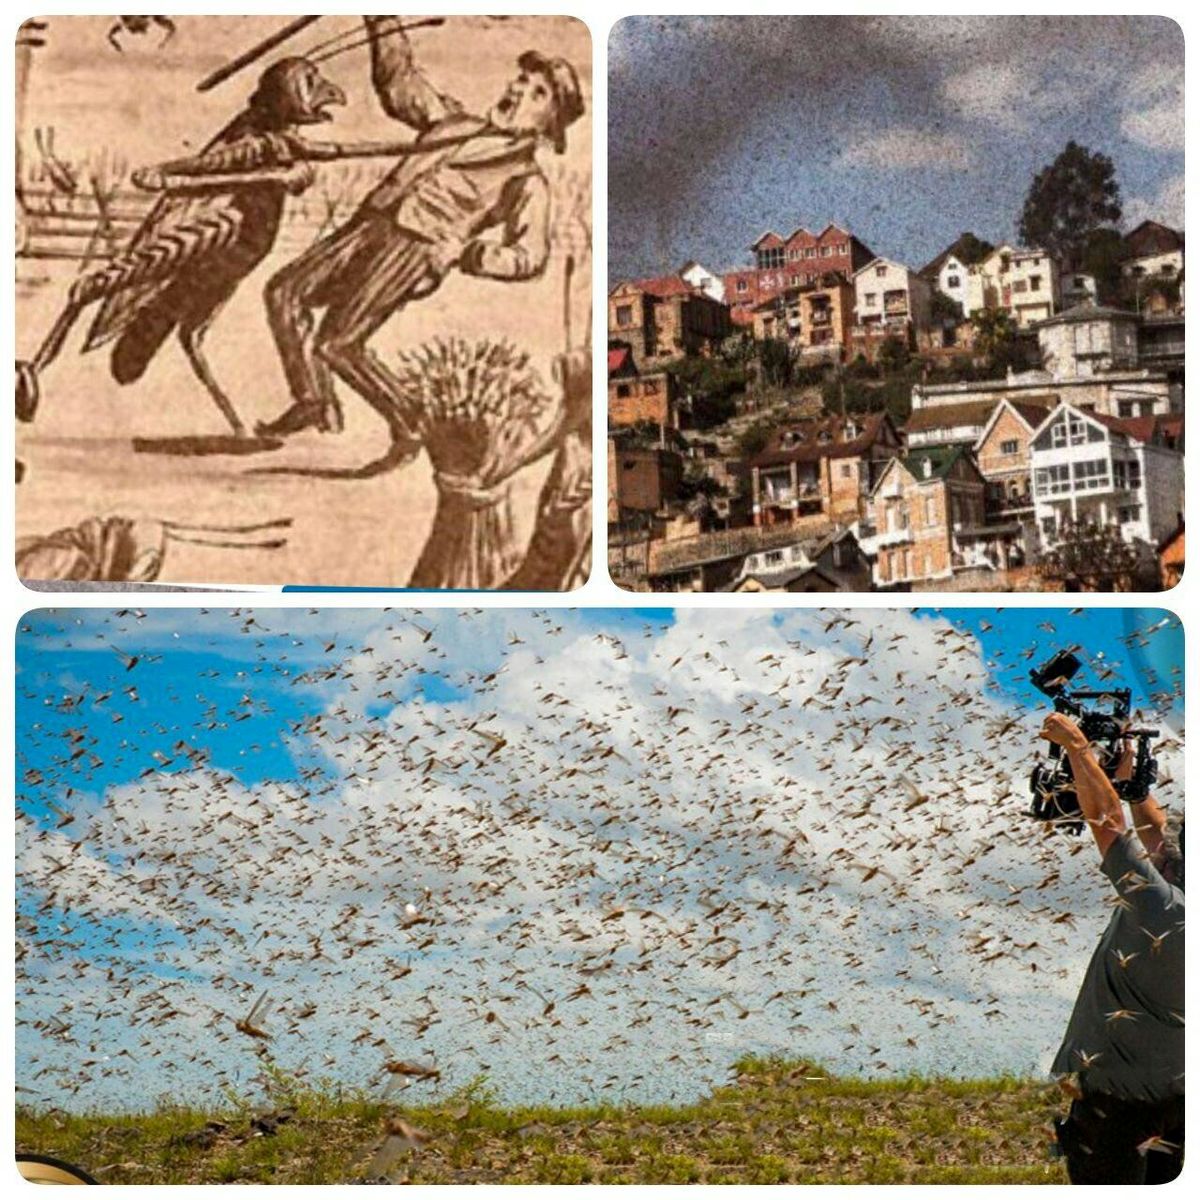 بزرگترین حمله حشرات در طول تاریخ